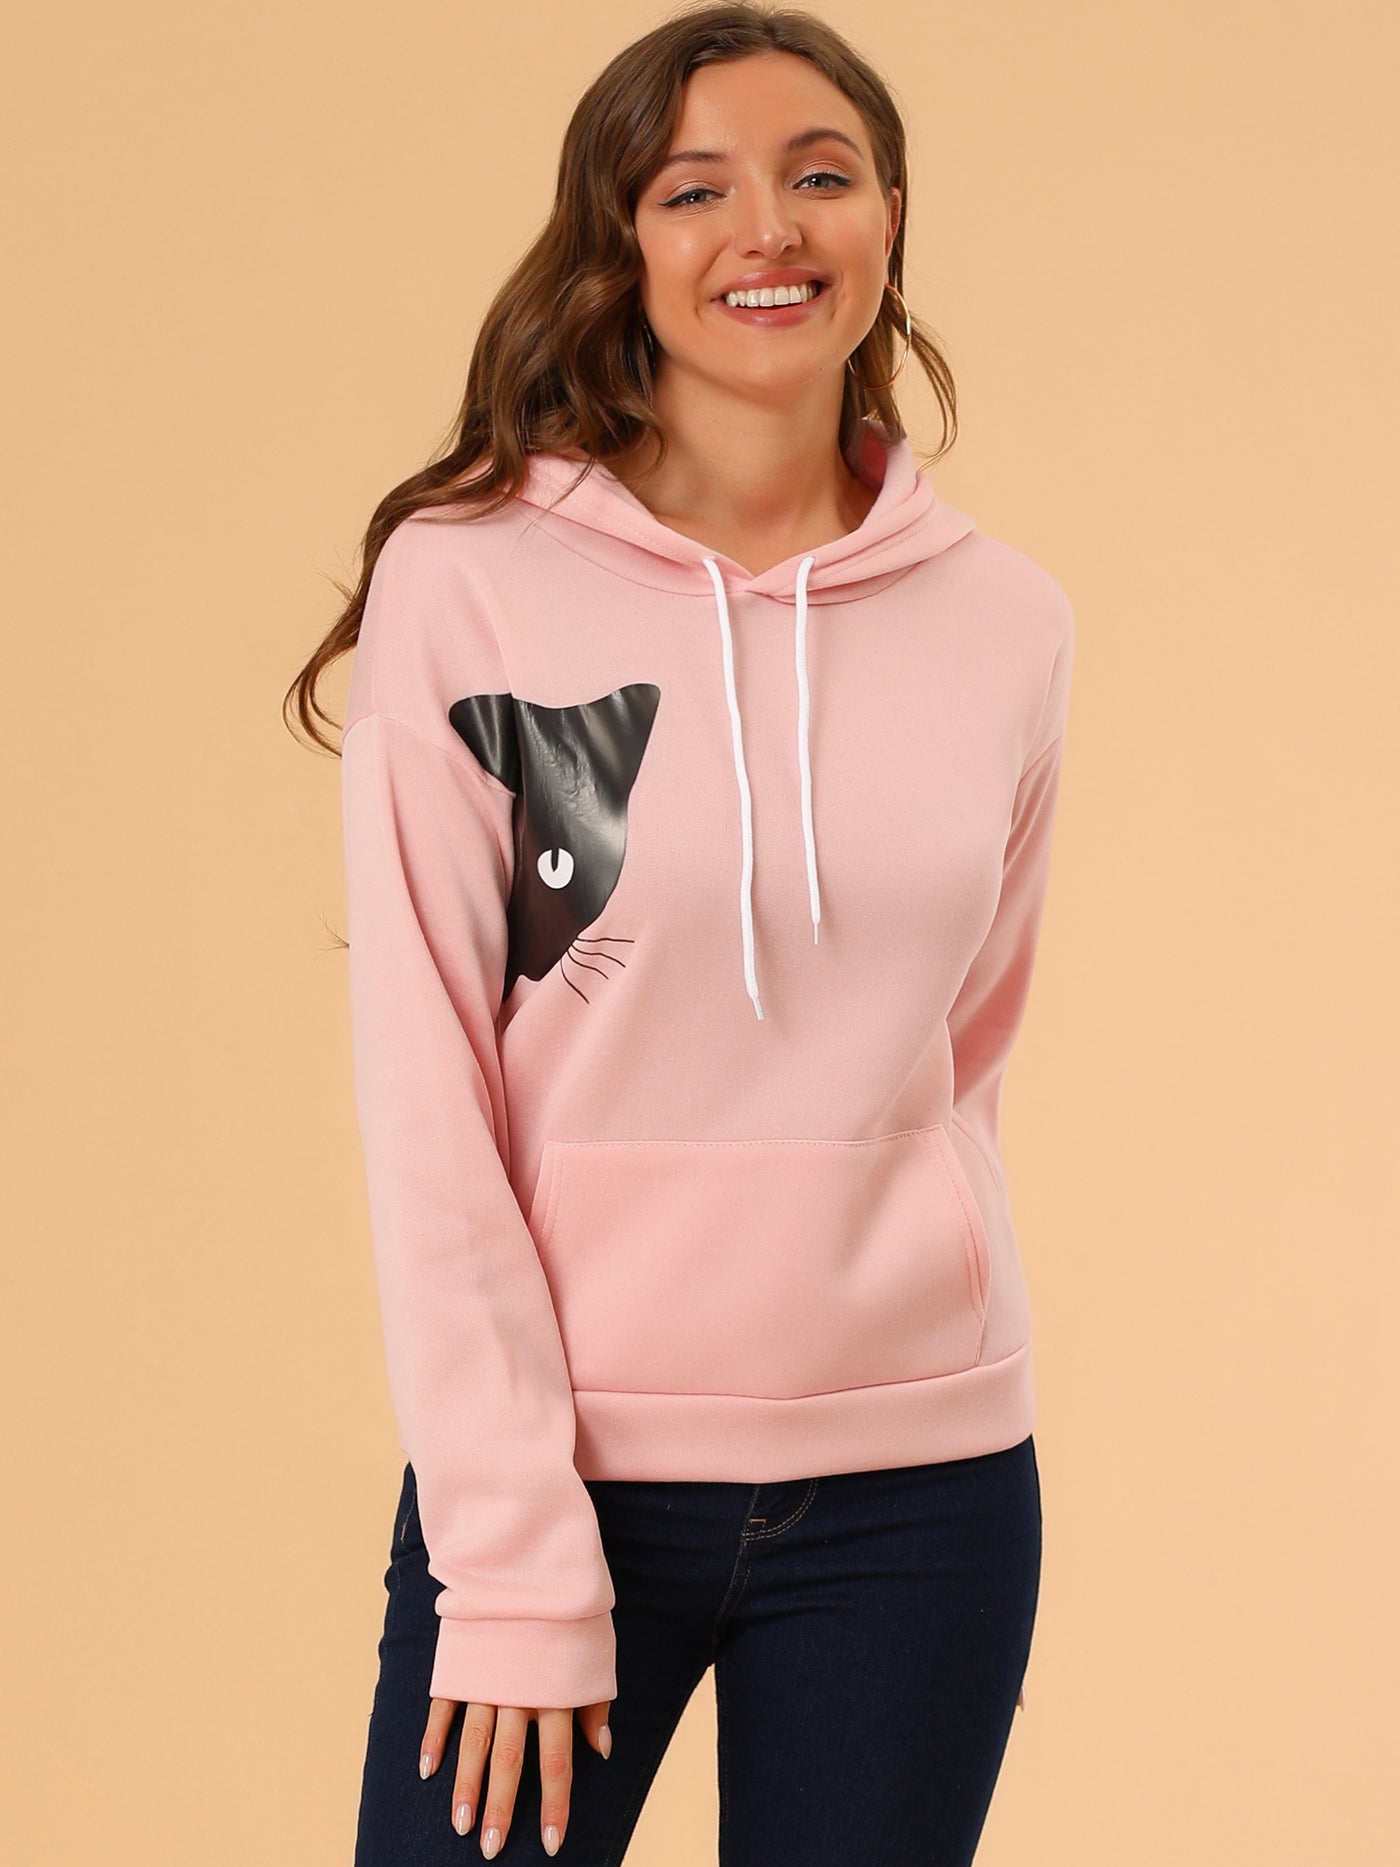 Allegra K Hoodie Rabbit Ear Cat Print Halloween Cosplay Sweatshirt Tops Blouse